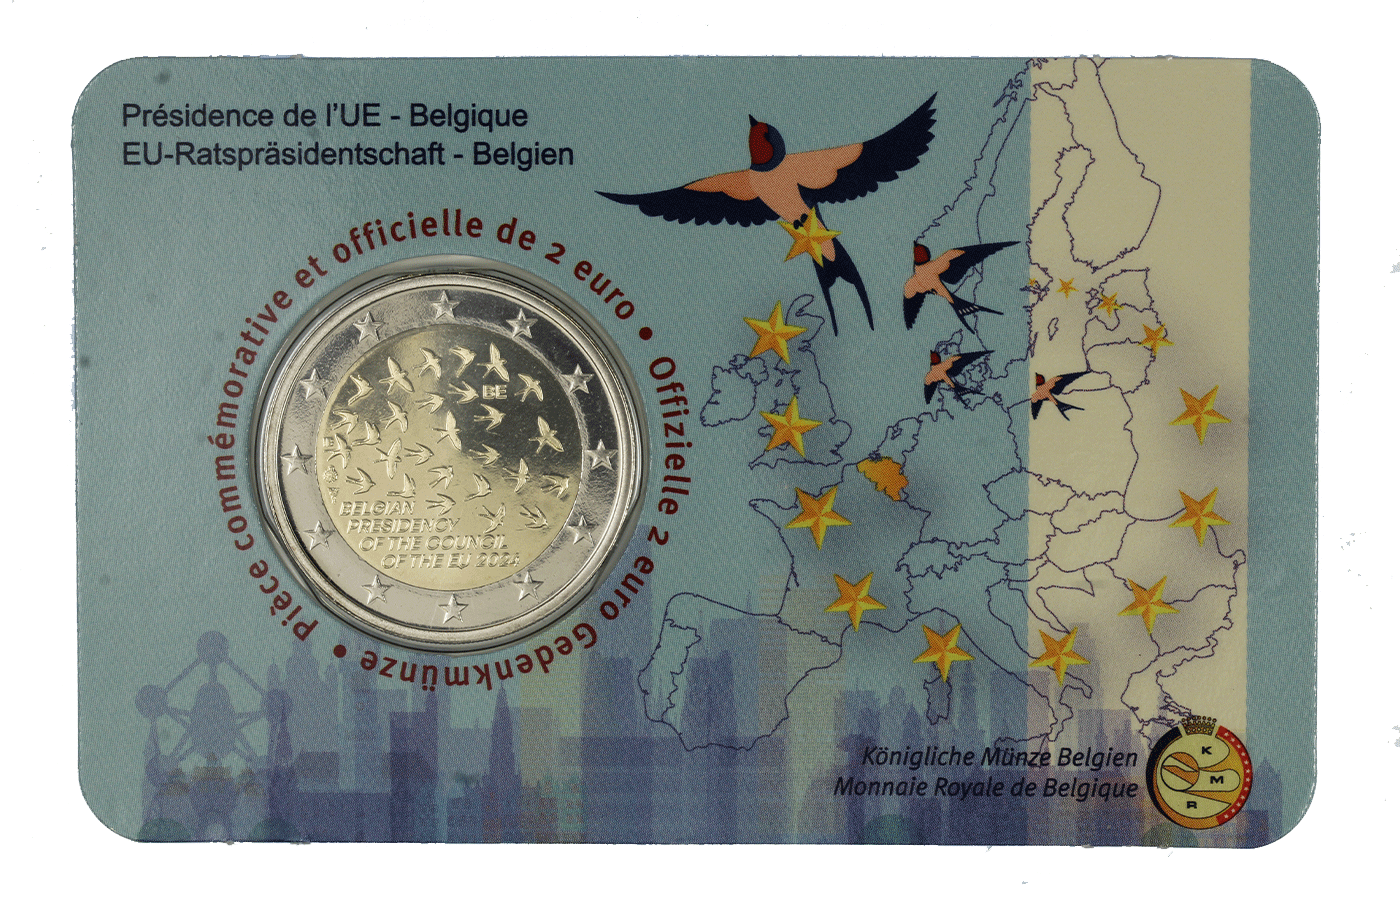 "Turno di Presidenza del Consiglio dell'Unione europea tenuto dal Belgio" - 2 Euro - In coincard francese